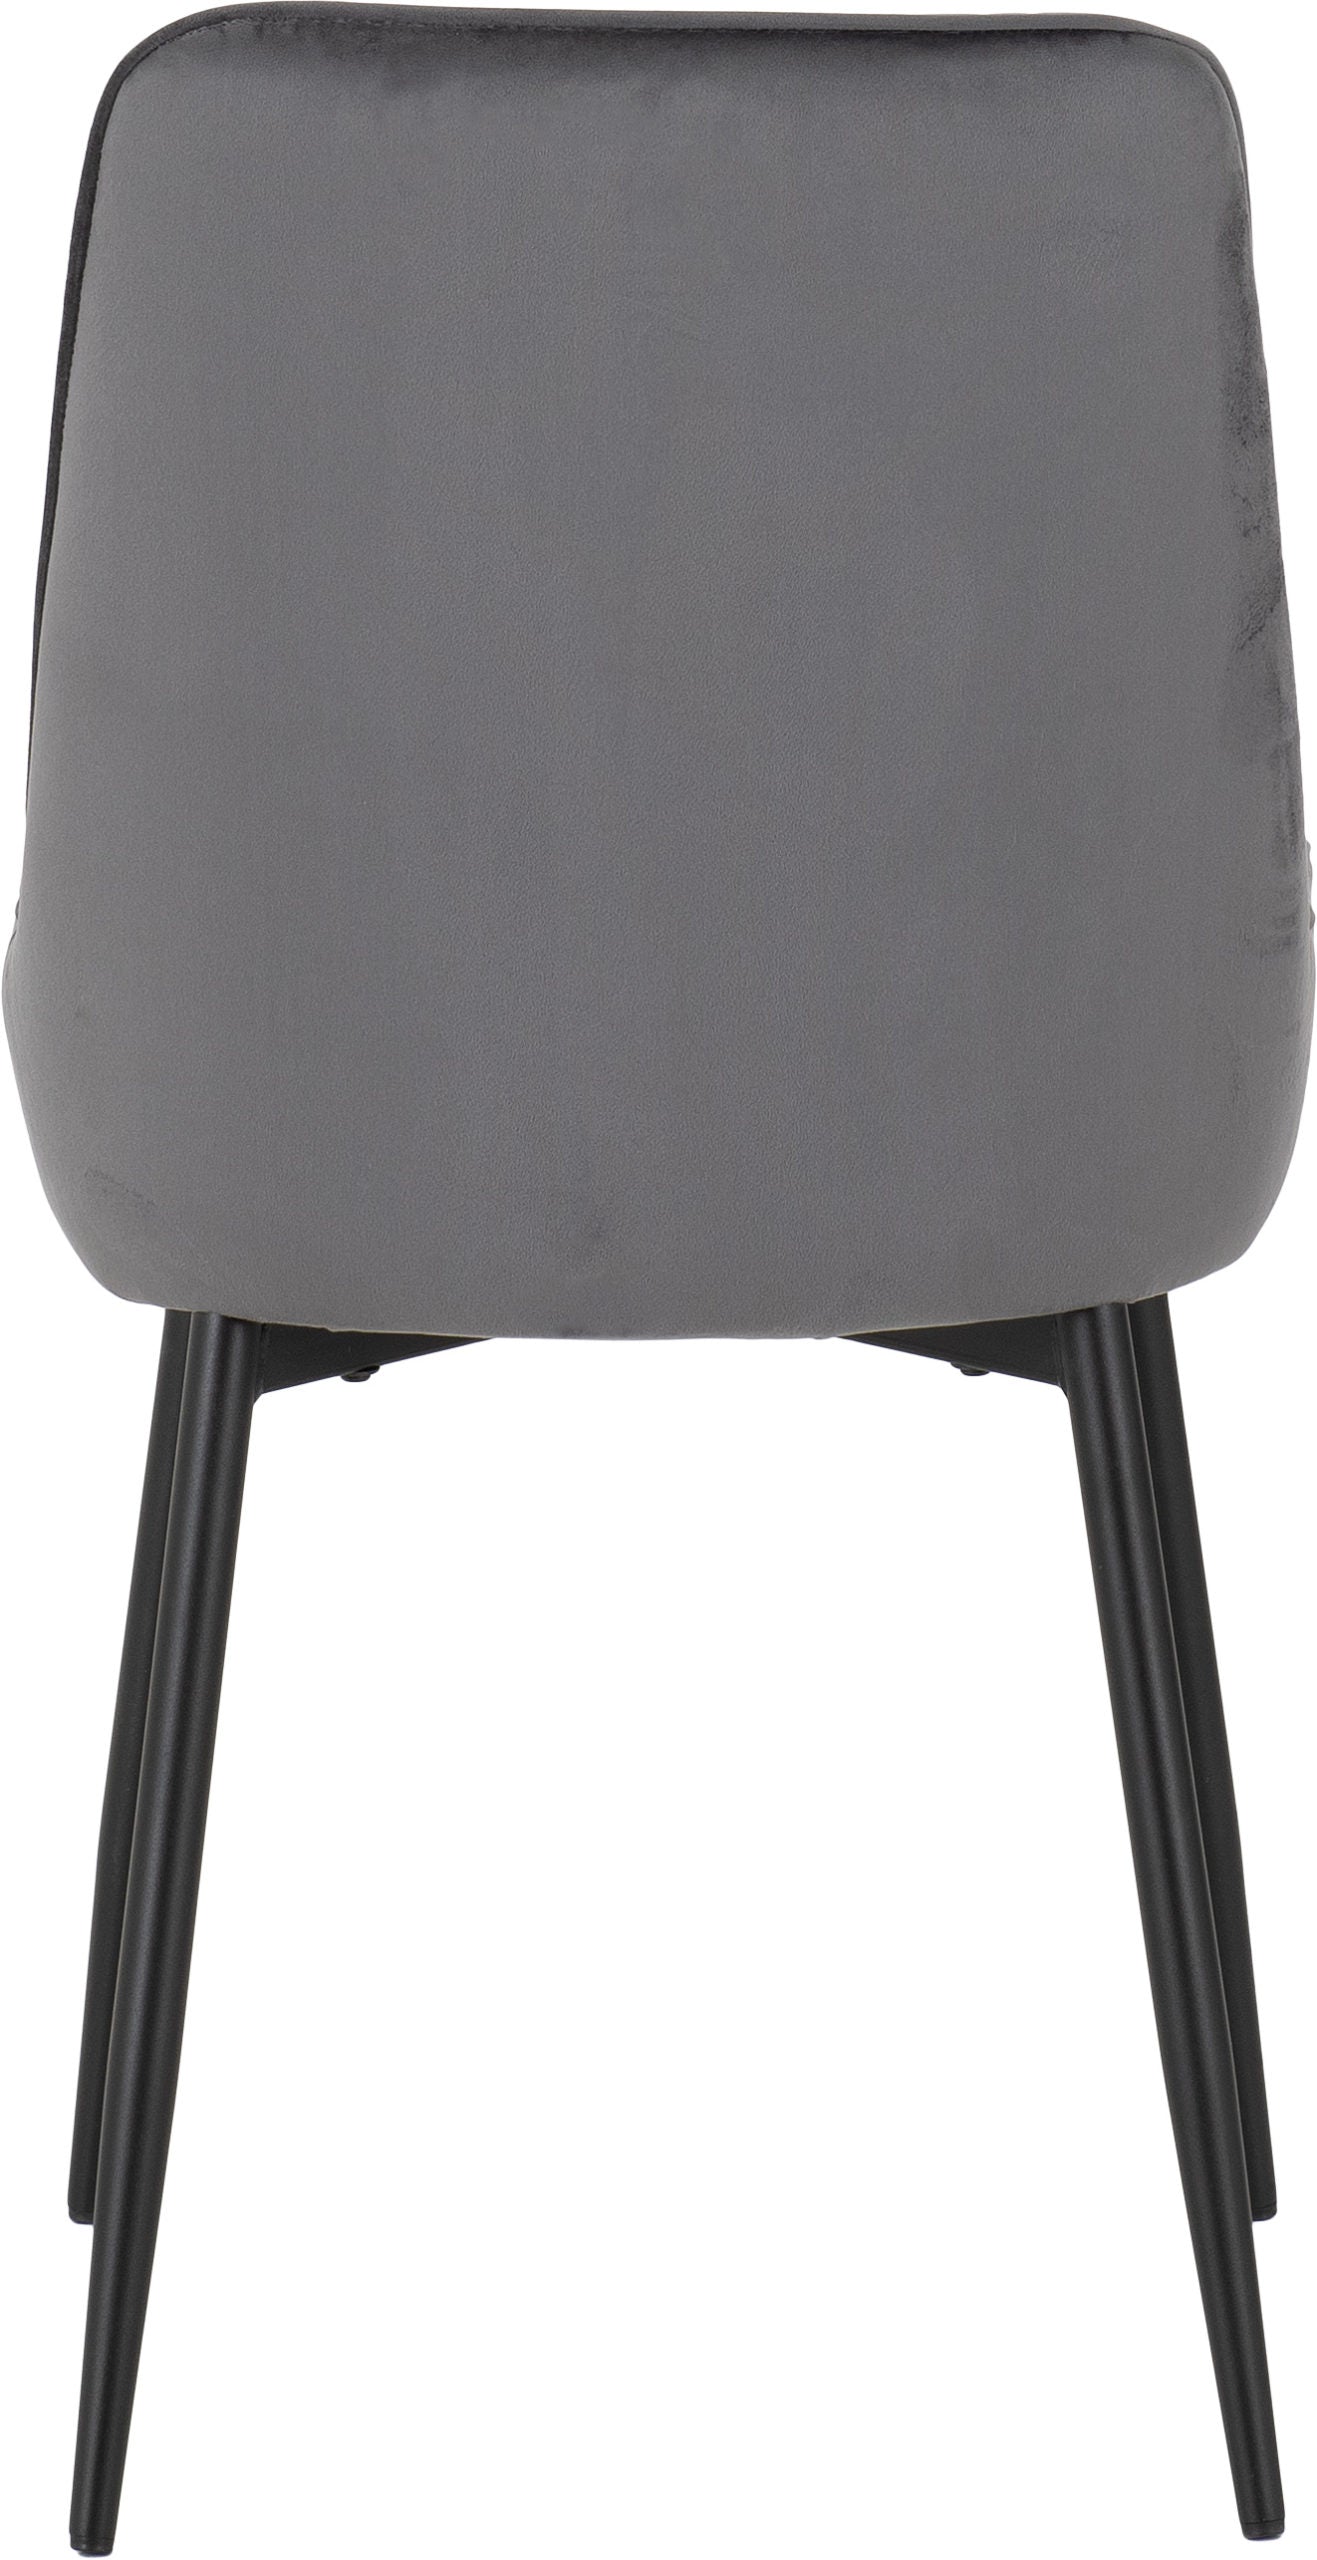 Avery Chair Grey Velvet- The Right Buy Store